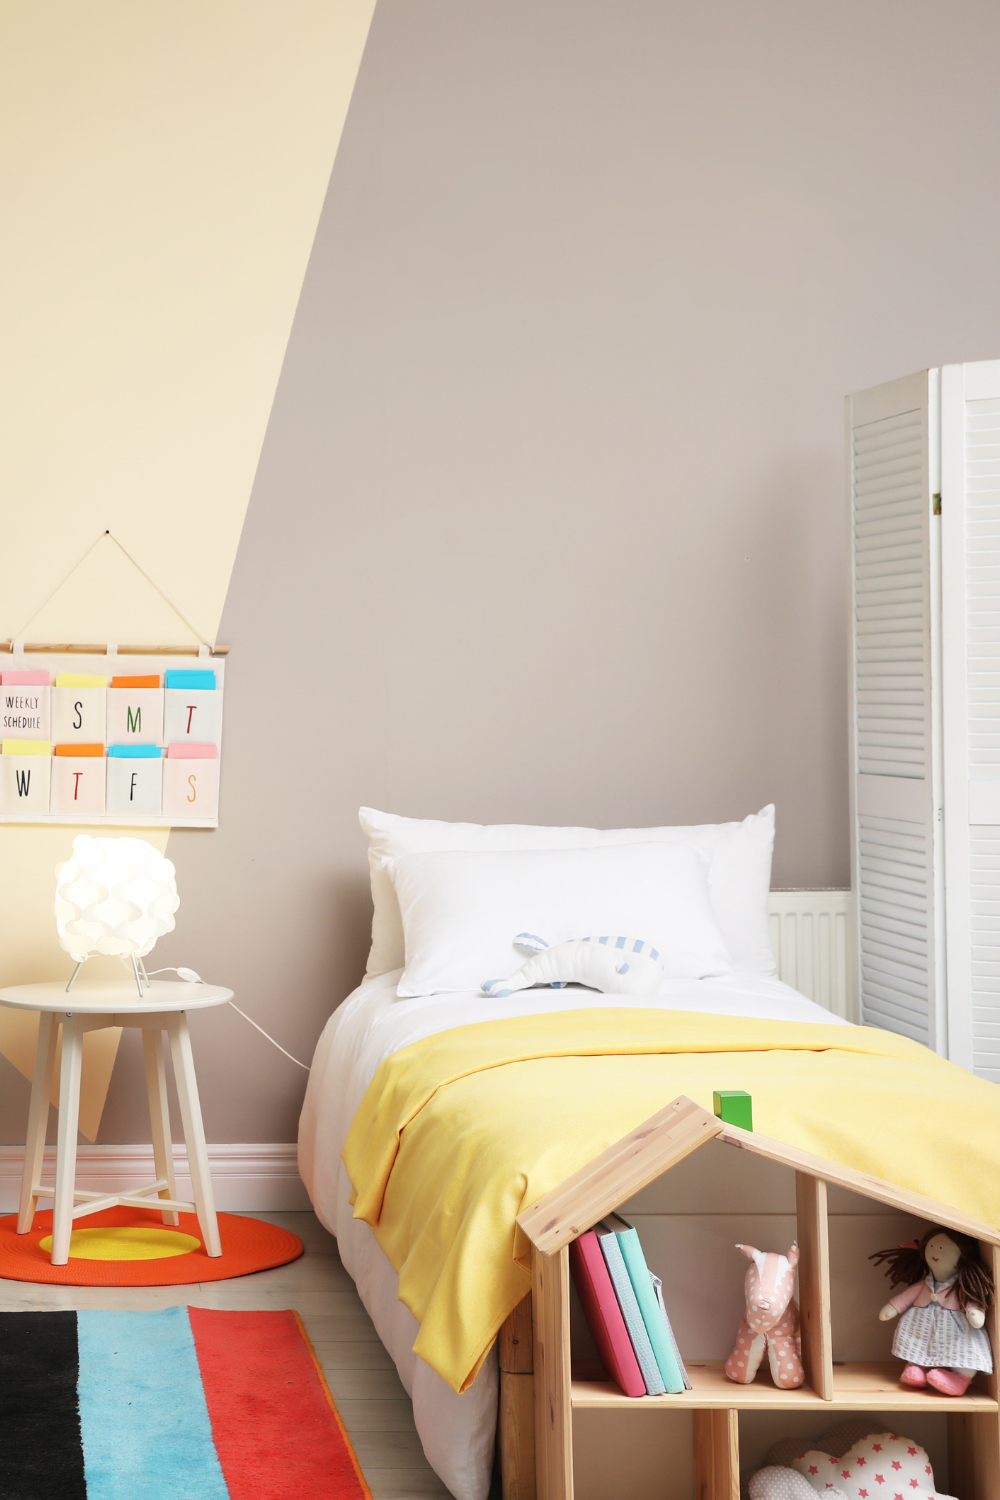 Top 10 Things Your Bedroom Needs - Dengarden